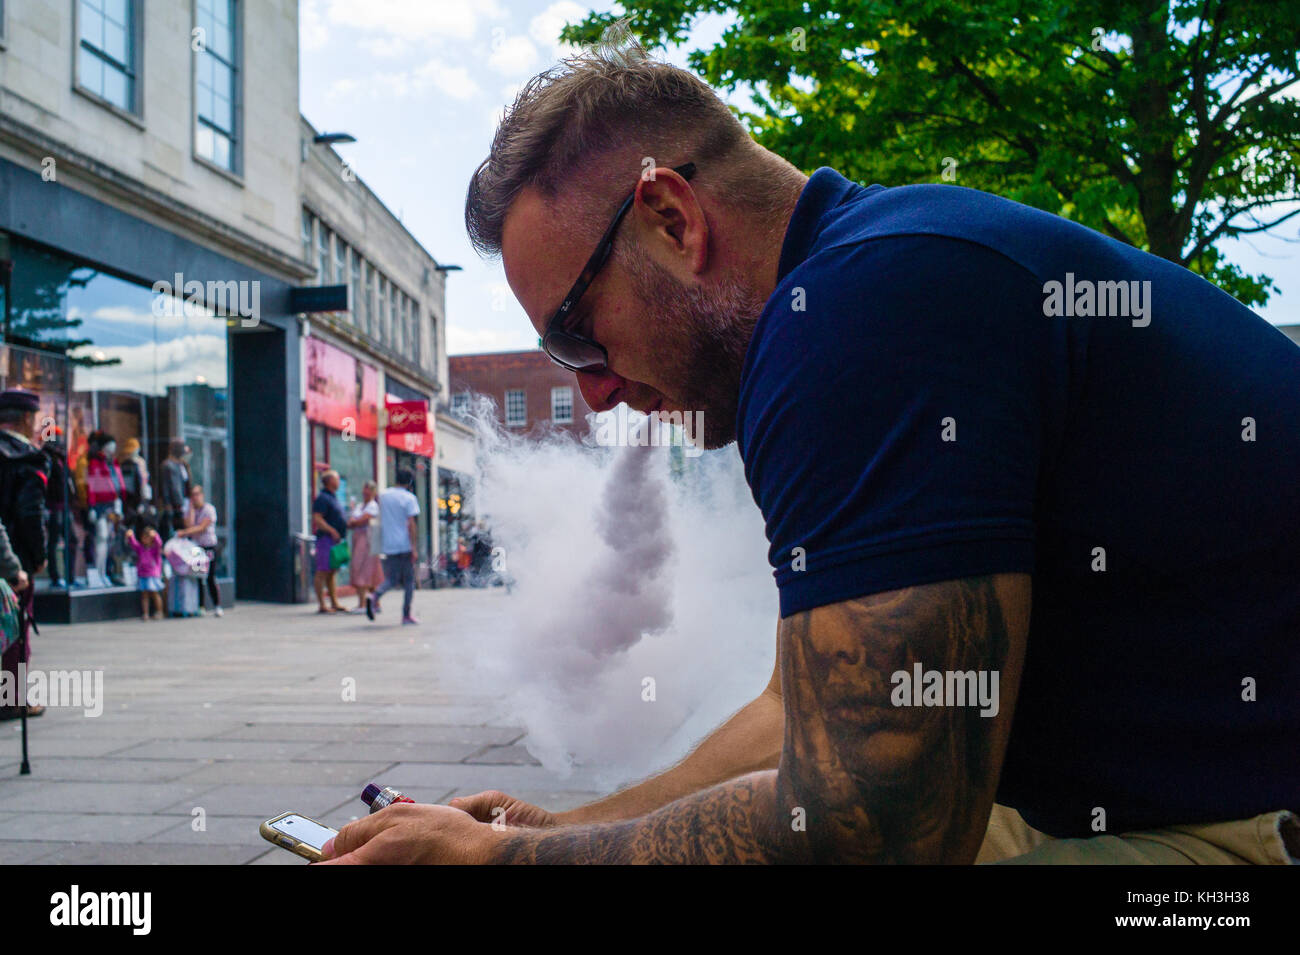 Un uomo studia il suo telefono cellulare mentre vaporava per strada. Foto Stock